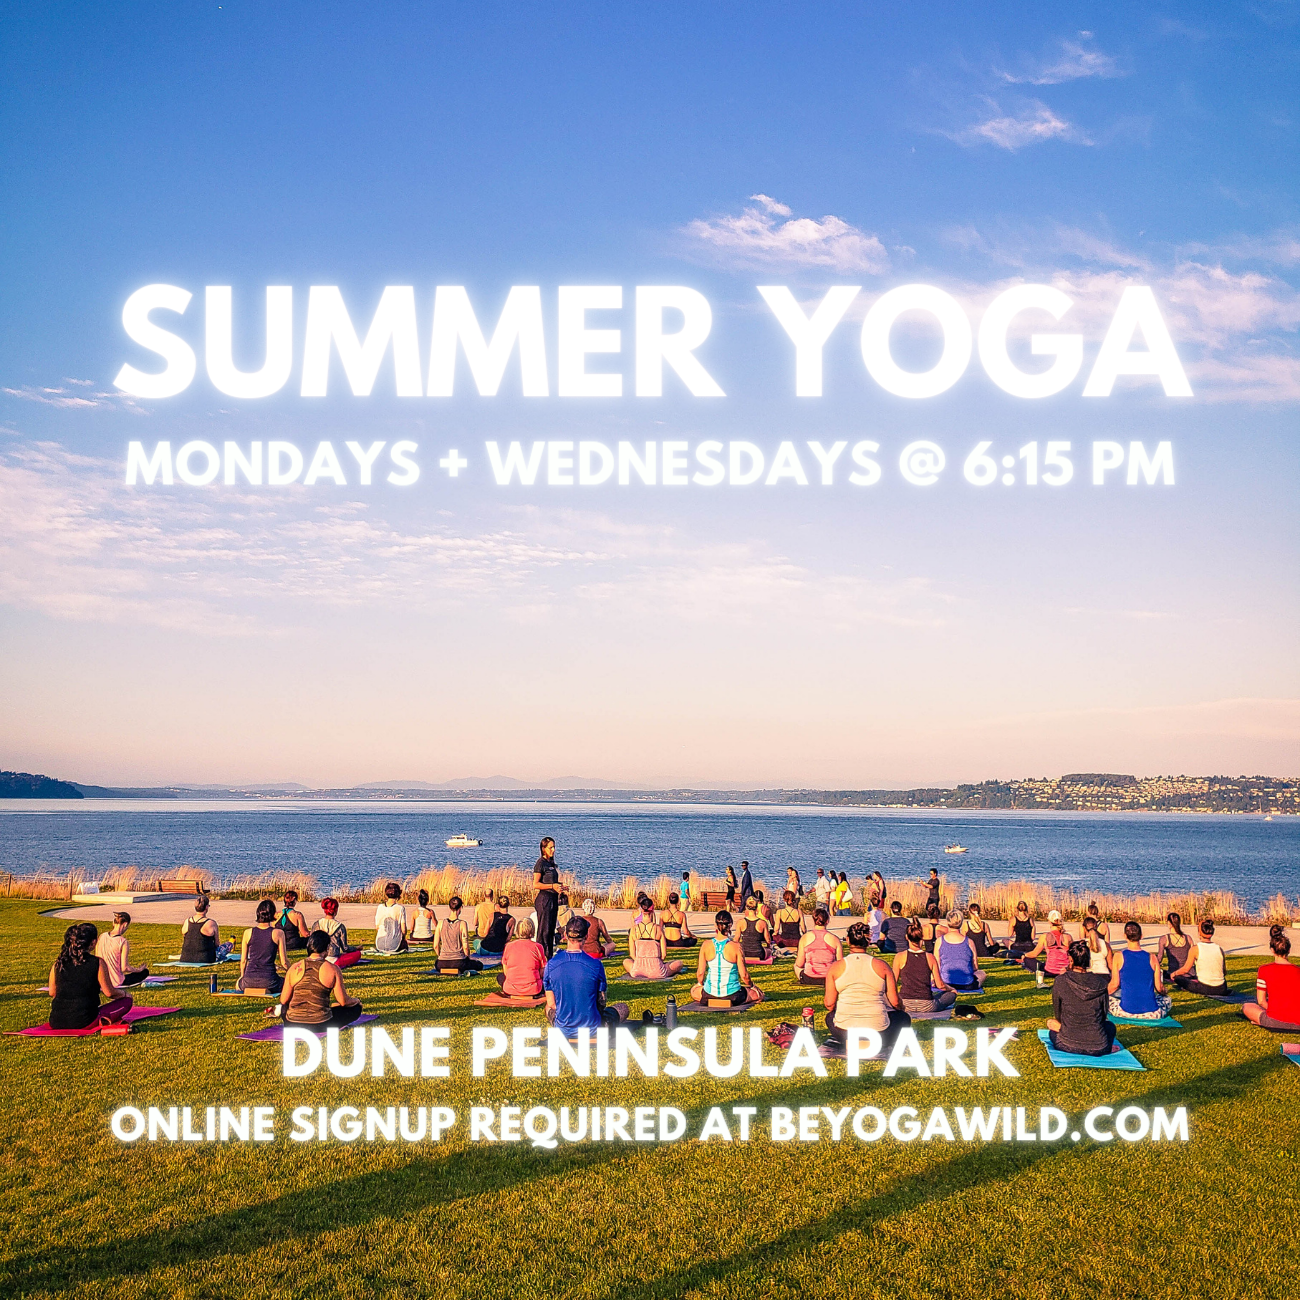 Summer Yoga at Dune Peninsula